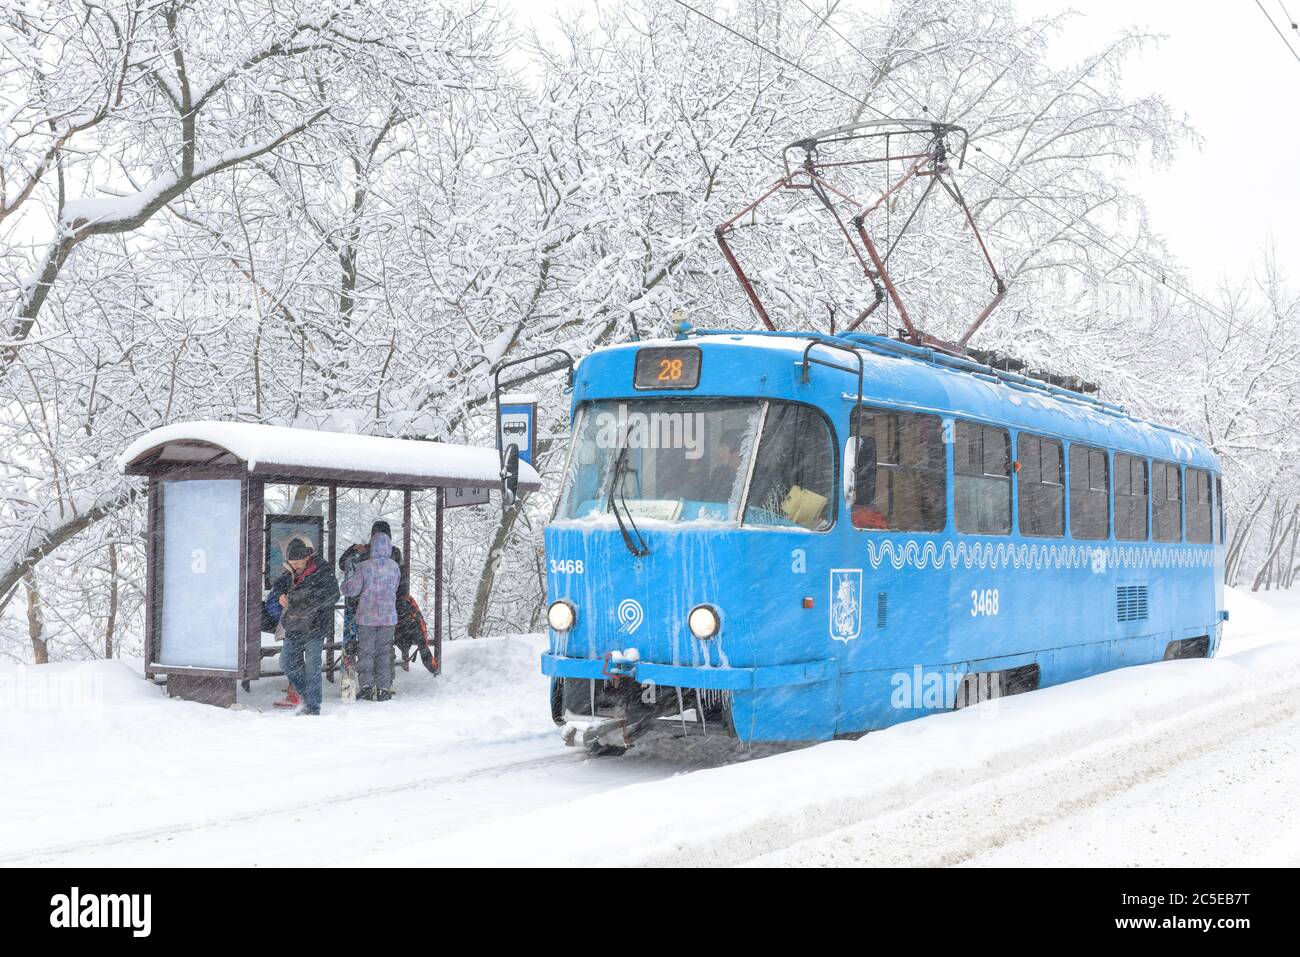 Moskau – 4. Februar 2018: Straßenbahn während Schneesturm im Winter, Russland. Die Menschen warten auf den städtischen Verkehr an der ICE-Haltestelle. Kälte und Schneefall in der Stadt. Gefrorene Straßenbahn auf Schnee Stockfoto